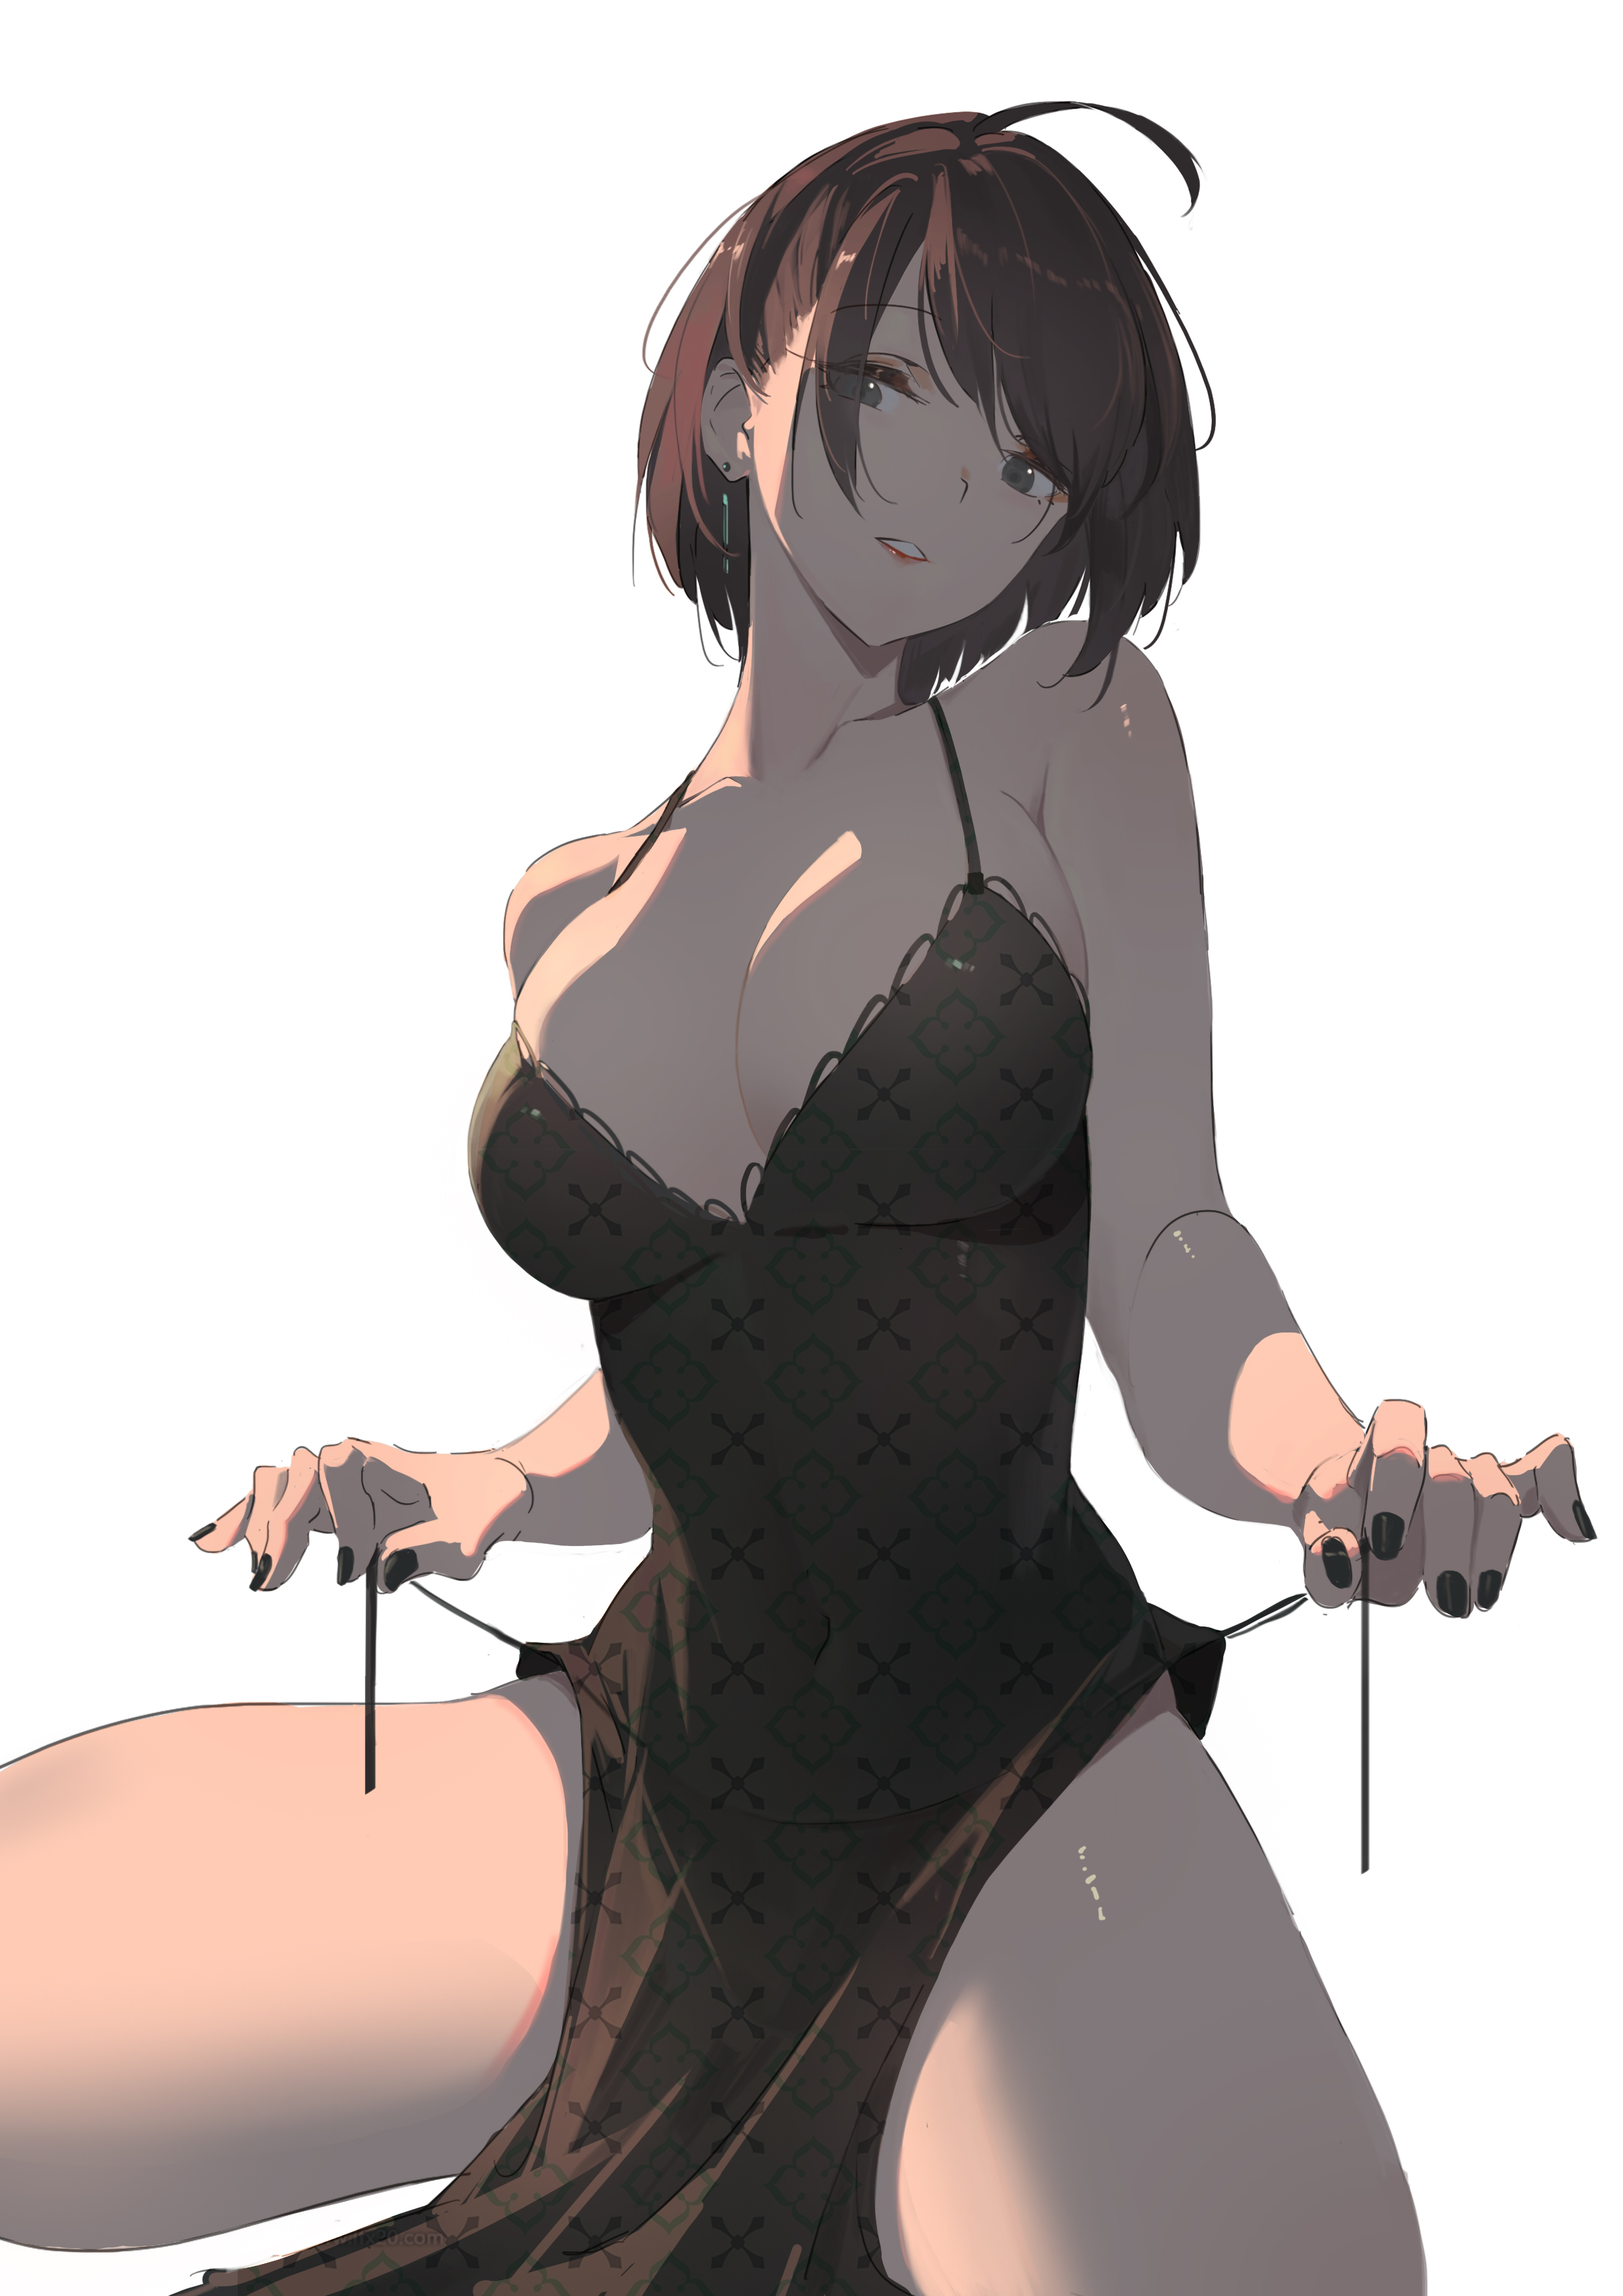 Anime 2480x3508 anime anime girls HUANG dress boobs thighs short hair brunette